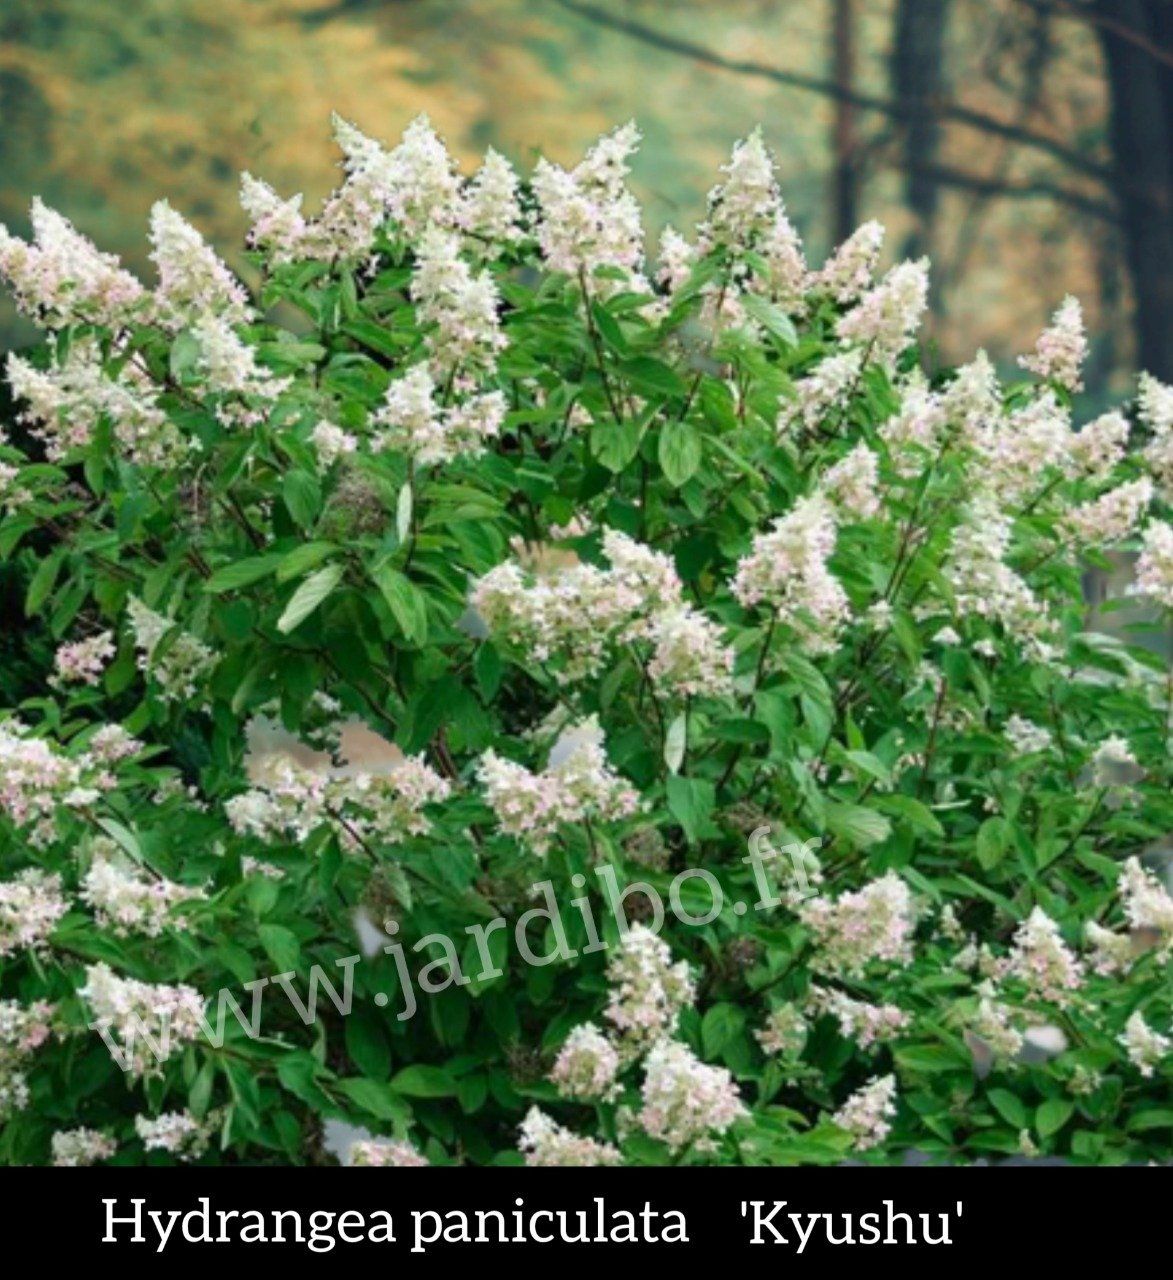 Hydrangea 'Hortensias' Panicula '' kyushu''